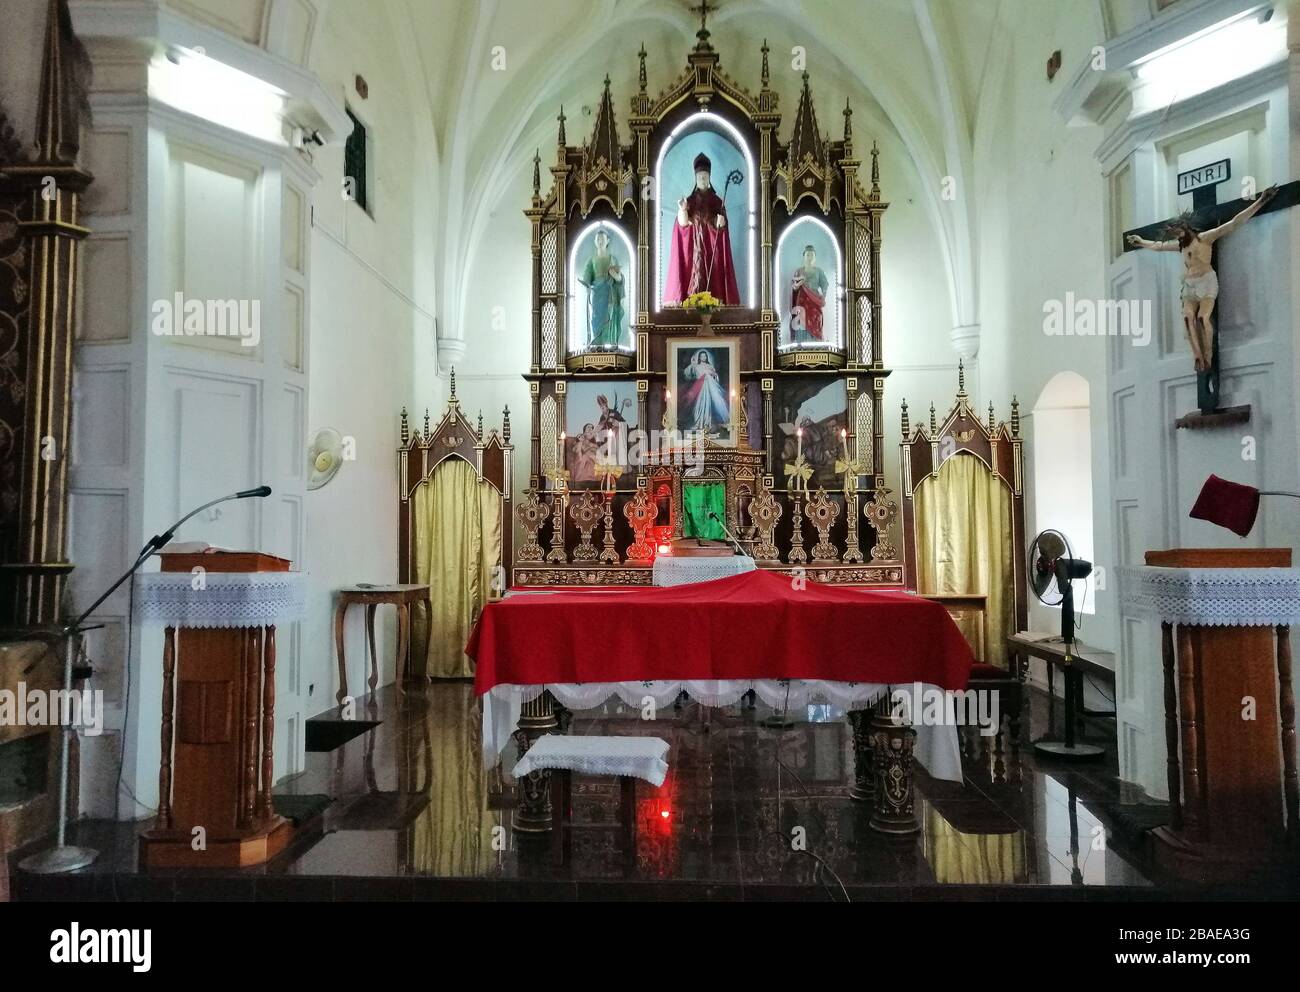 Hauptaltar an der katholischen St. Blaise Kirche in Gandaulim, Goa, Indien Stockfoto